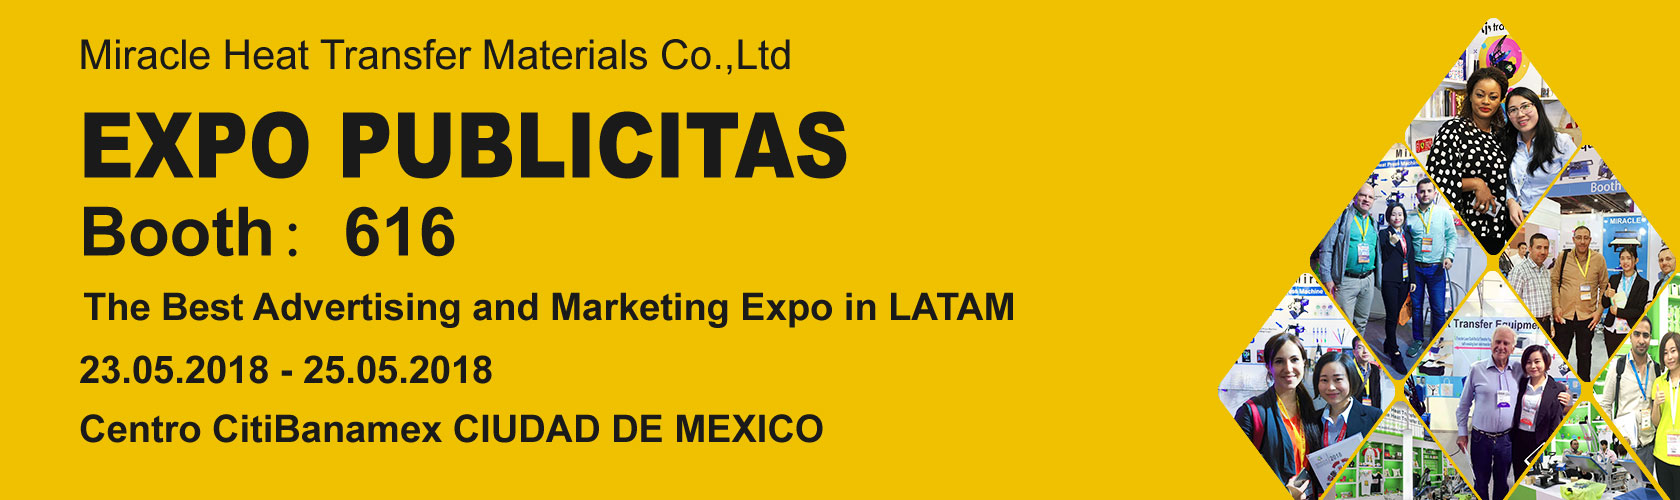 EXPO PUBLICITAS 2018 in Mexico